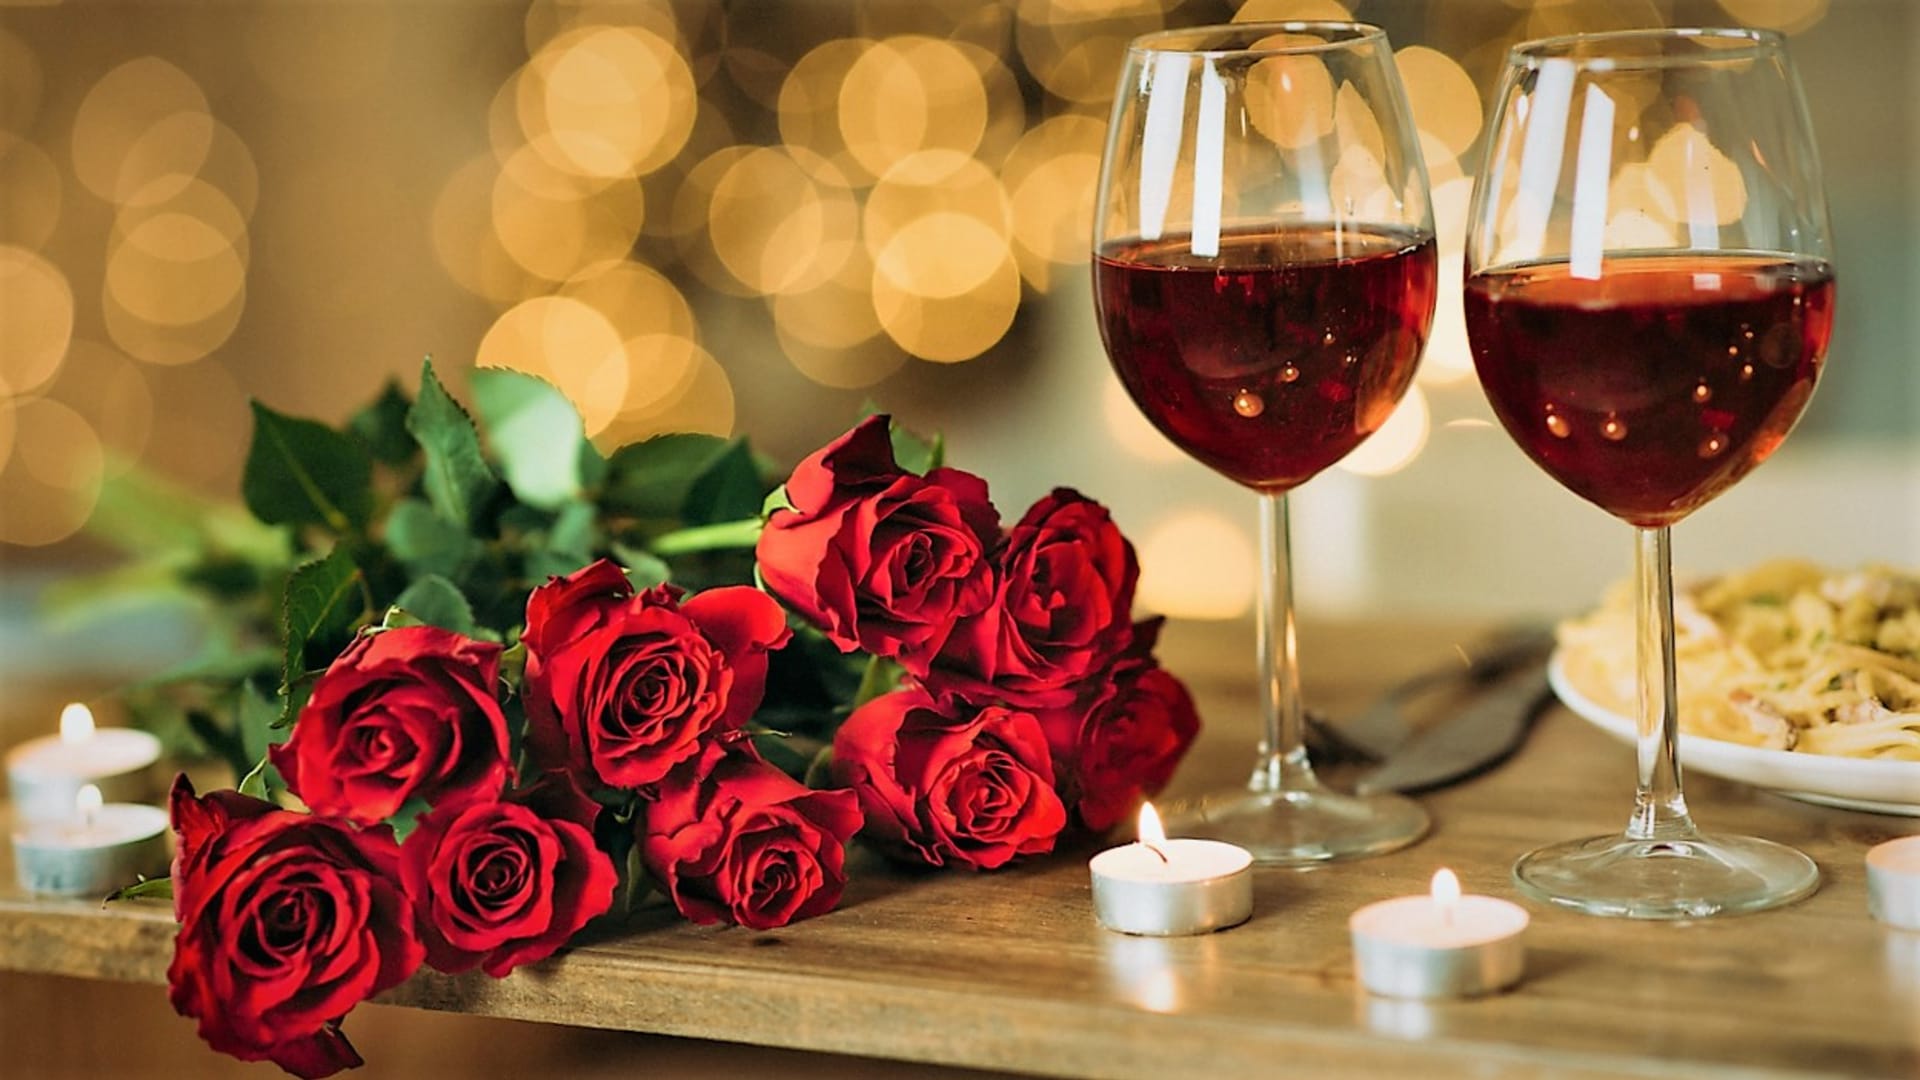 Nápoje lásky:  Vyzkoušejte nejlepší přírodní afrodiziaka a užijte si žhavou valentýnskou noc!